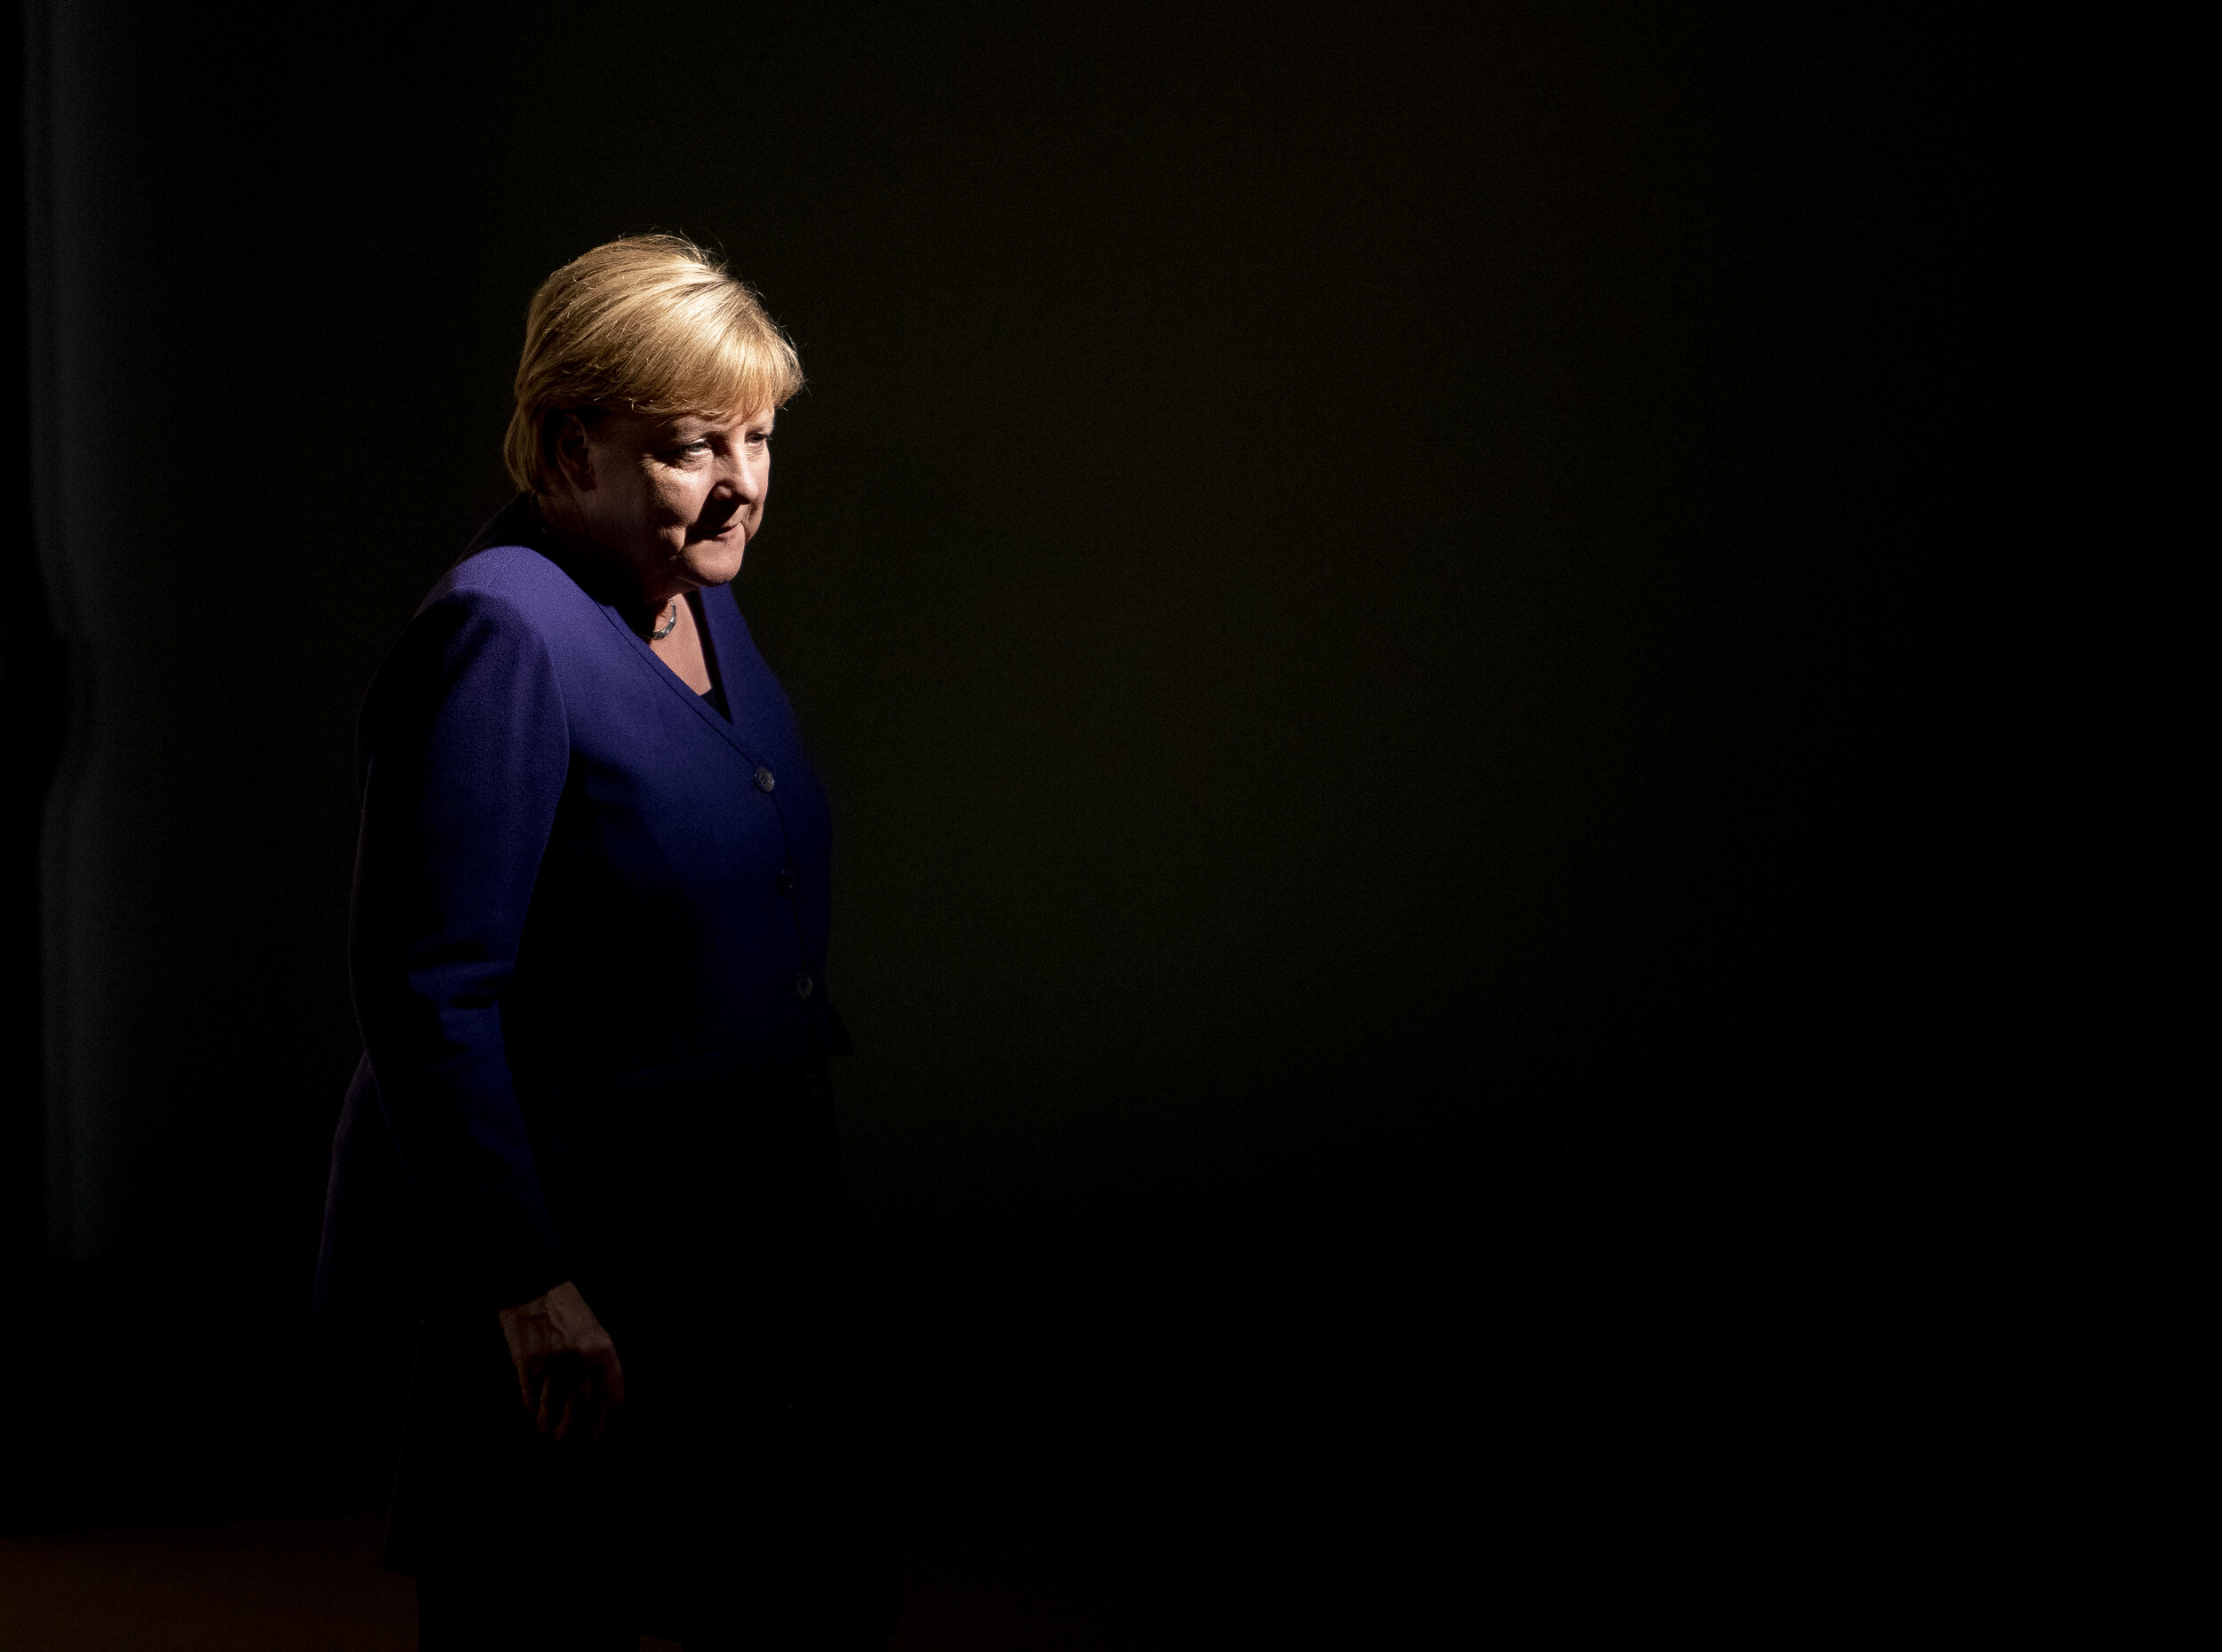  Bundeskanzlerin Angela Merkel wird auf Jahrestagung des Markenverbandes von einem Scheinwerfer angestrahlt. 